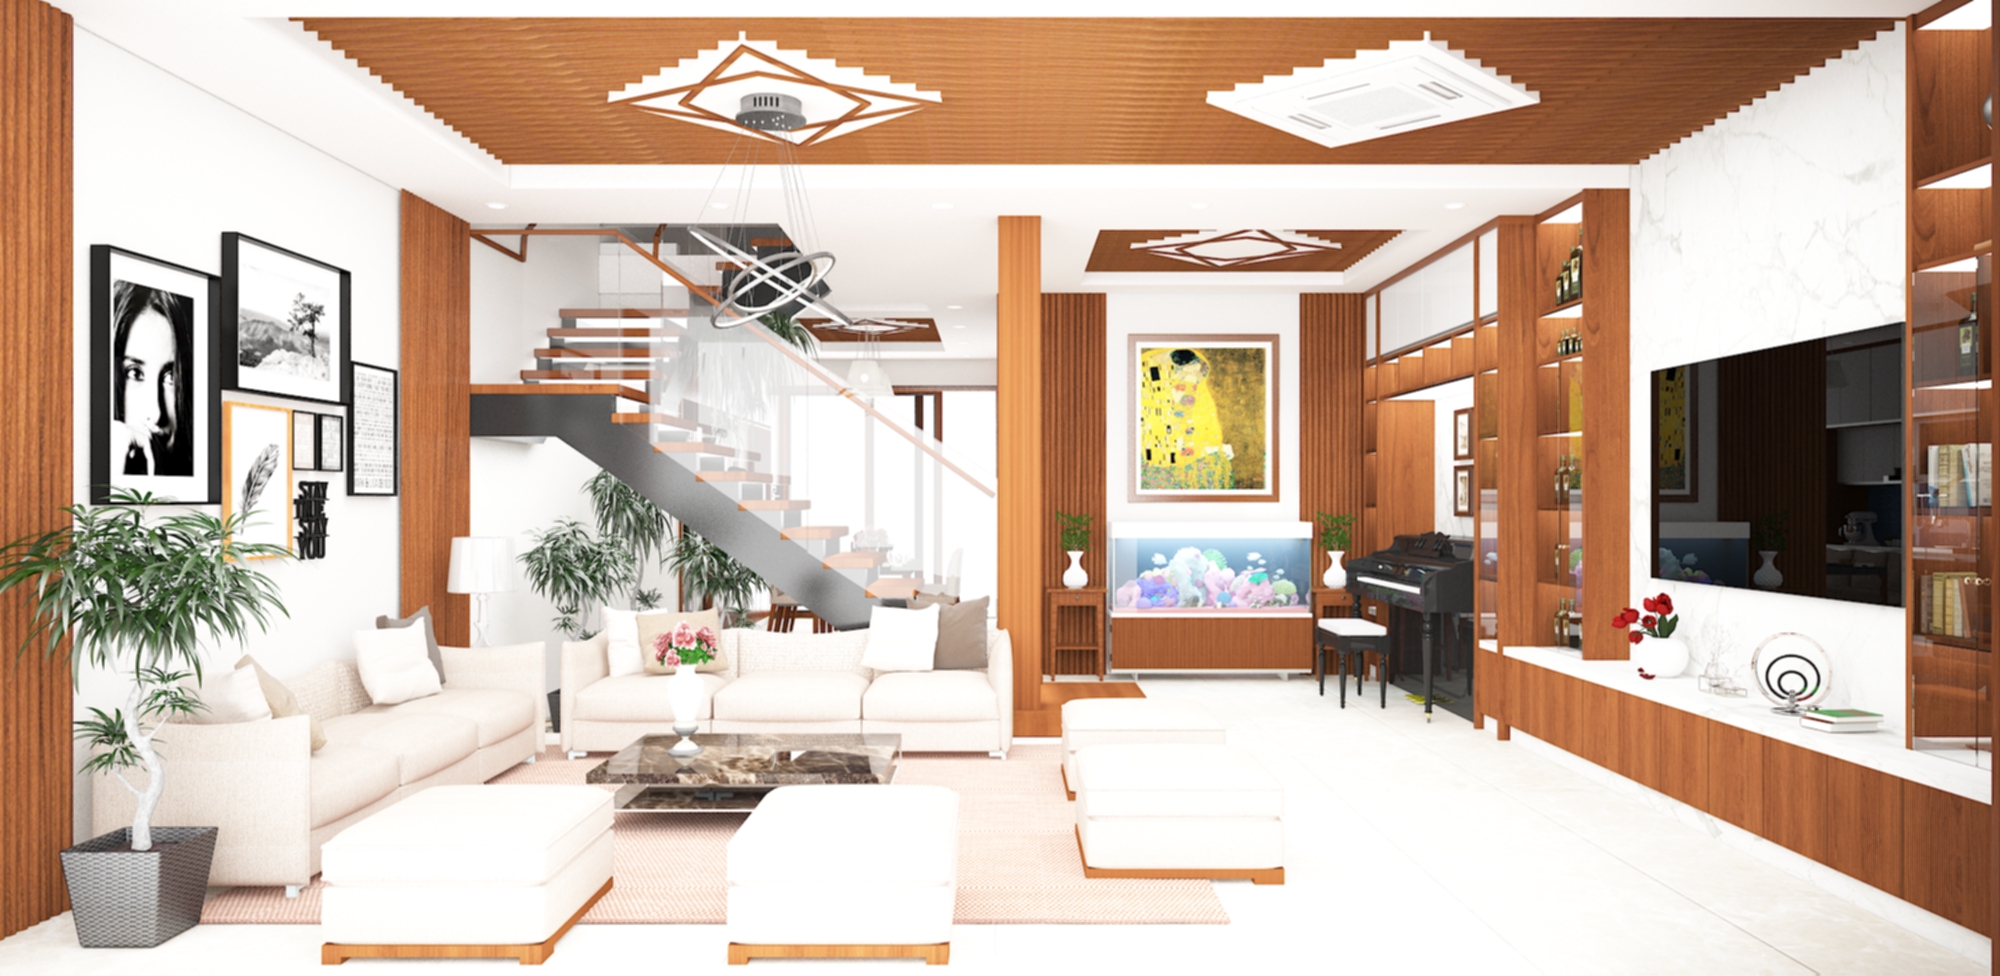 Thiết kế nội thất Chung Cư tại Hà Nội bếp hiện đại 1627530380 5